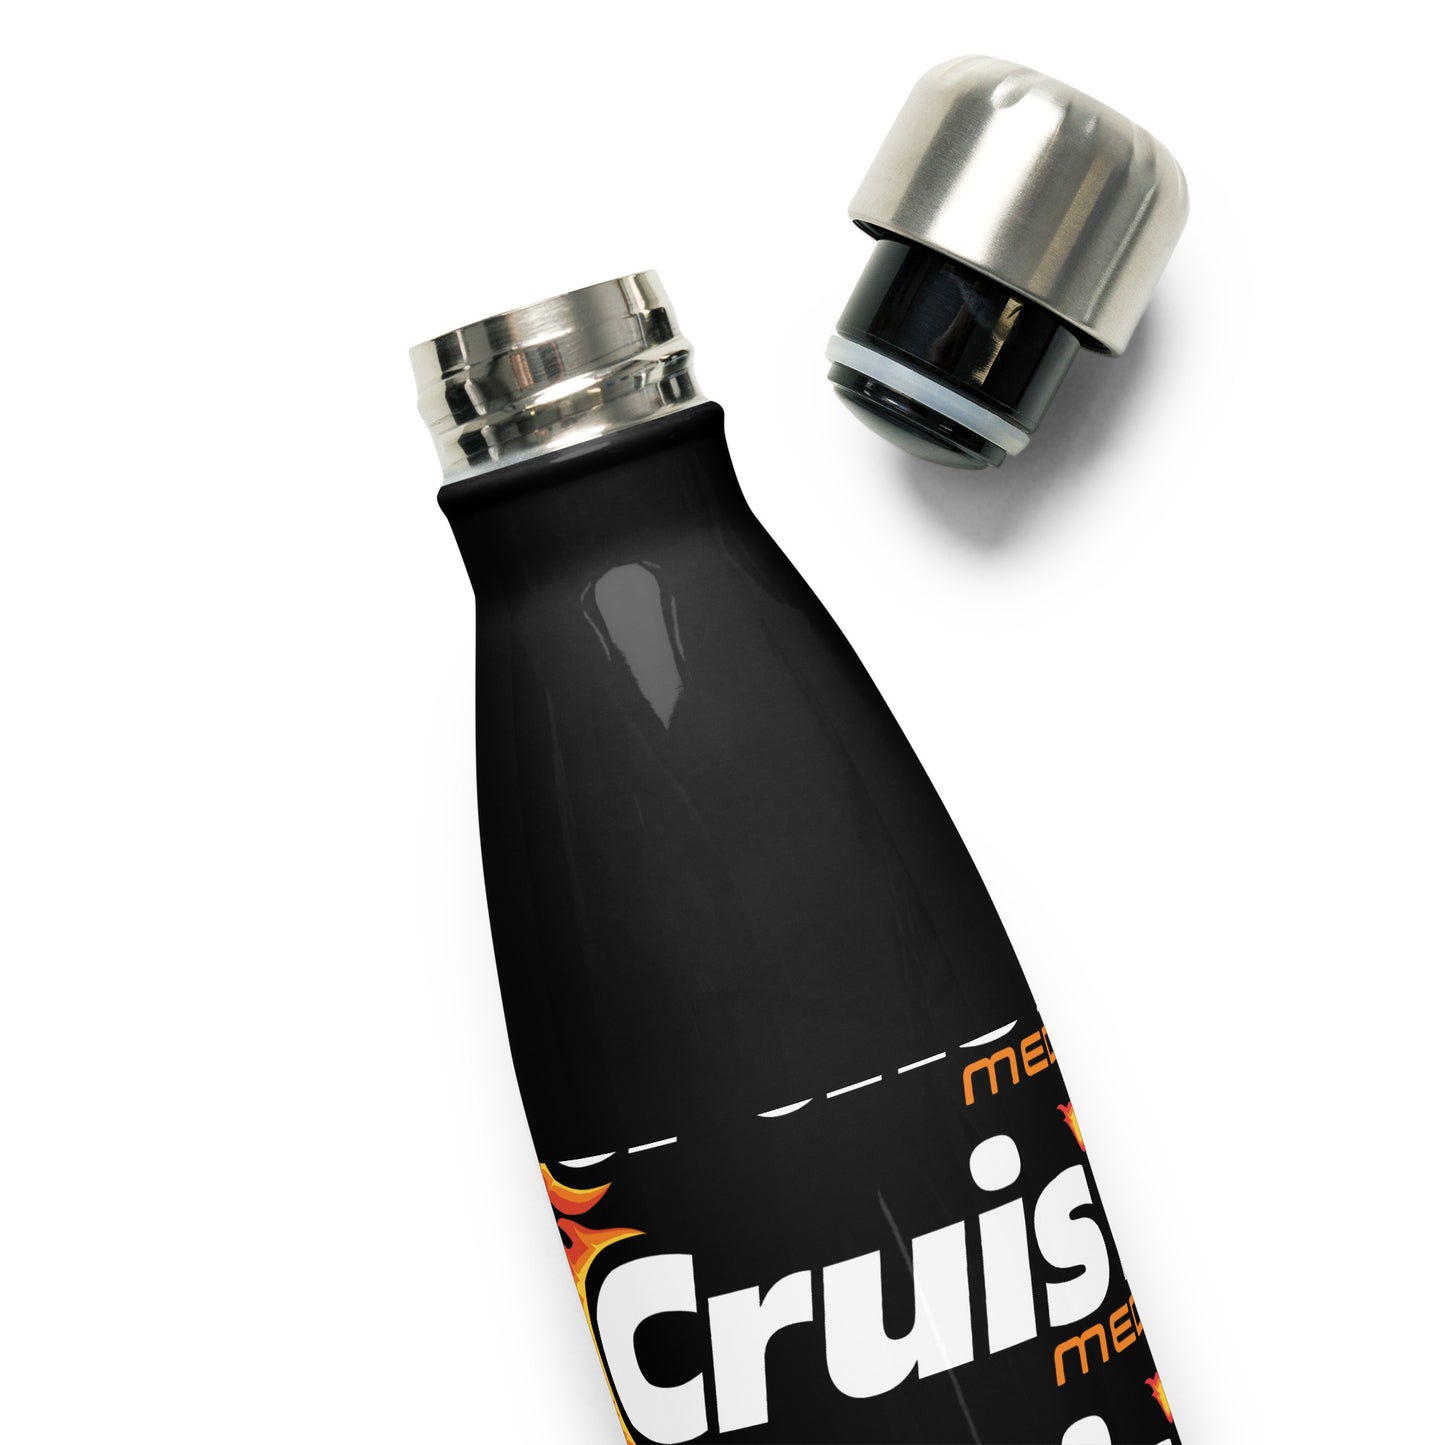 Cruis'n Media Stainless Steel Water Bottle